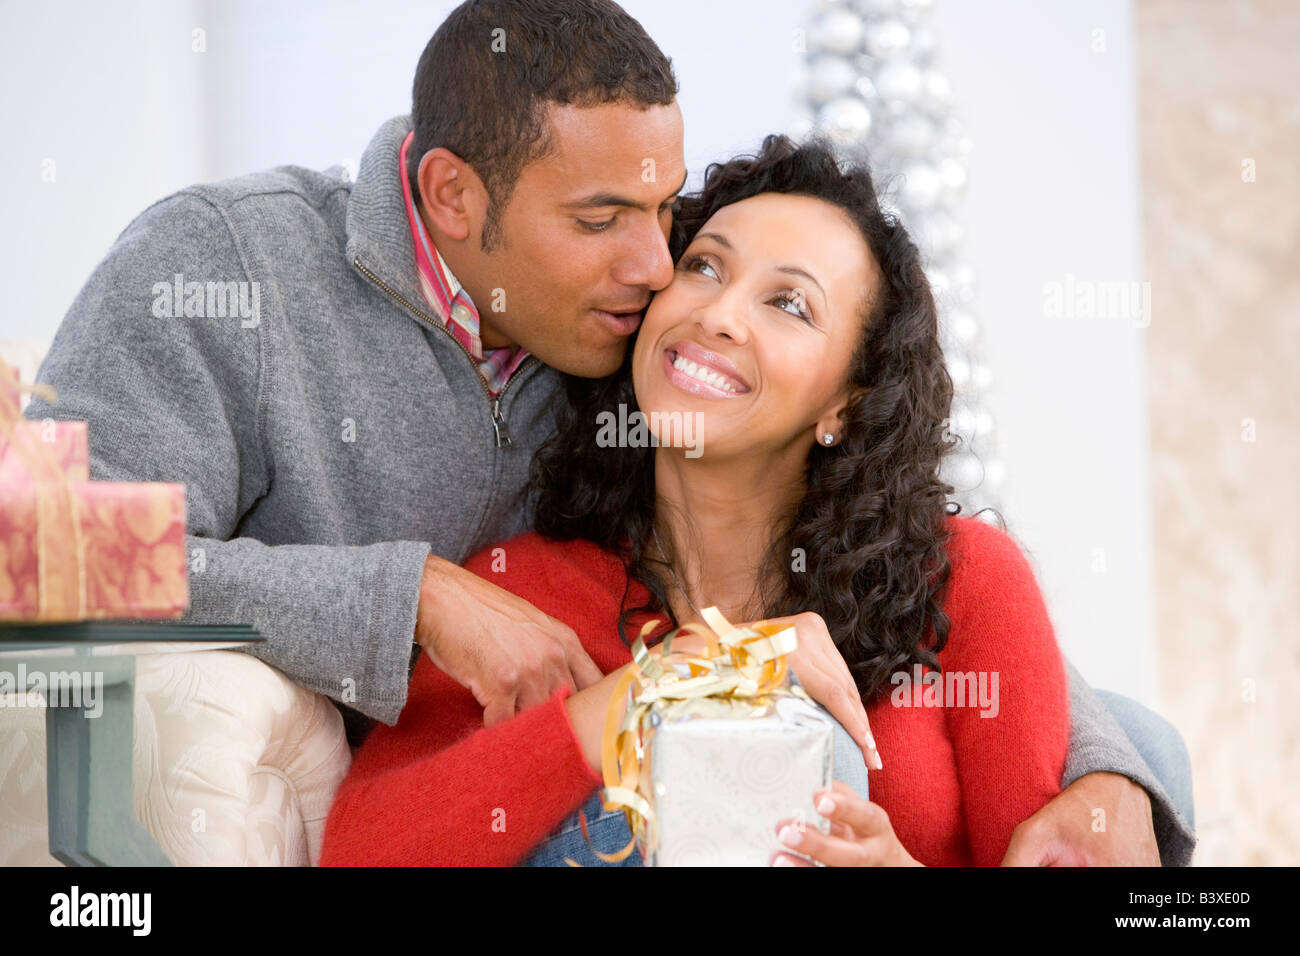 Regali Di Natale Moglie.Il Marito E La Moglie Affettuosamente Lo Scambio Di Regali Di Natale Foto Stock Alamy